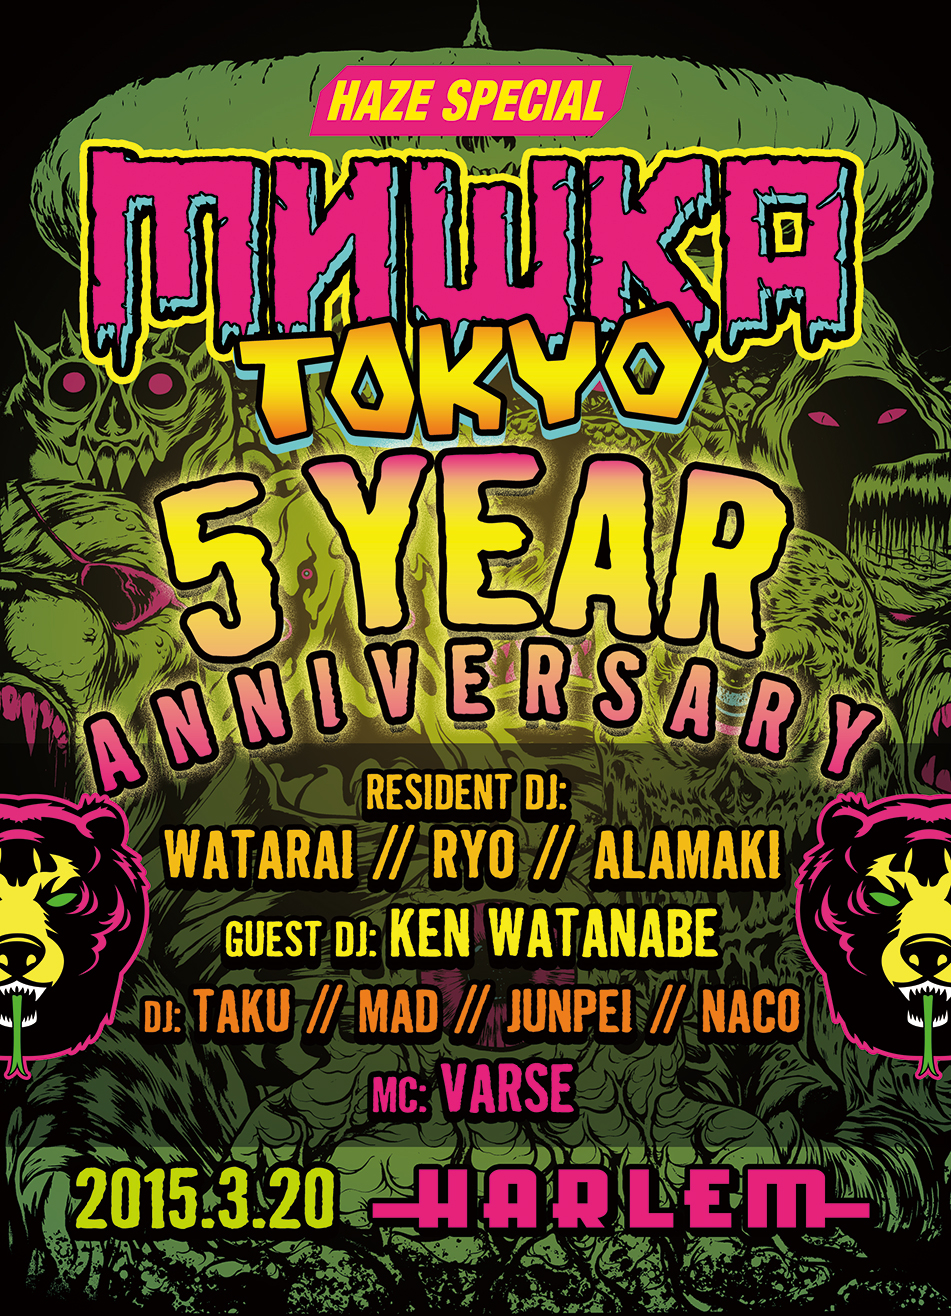 Mishka 3 Fri Mishka Tokyo 5 Year Anniversary Harlem Calquinto Co Ltd